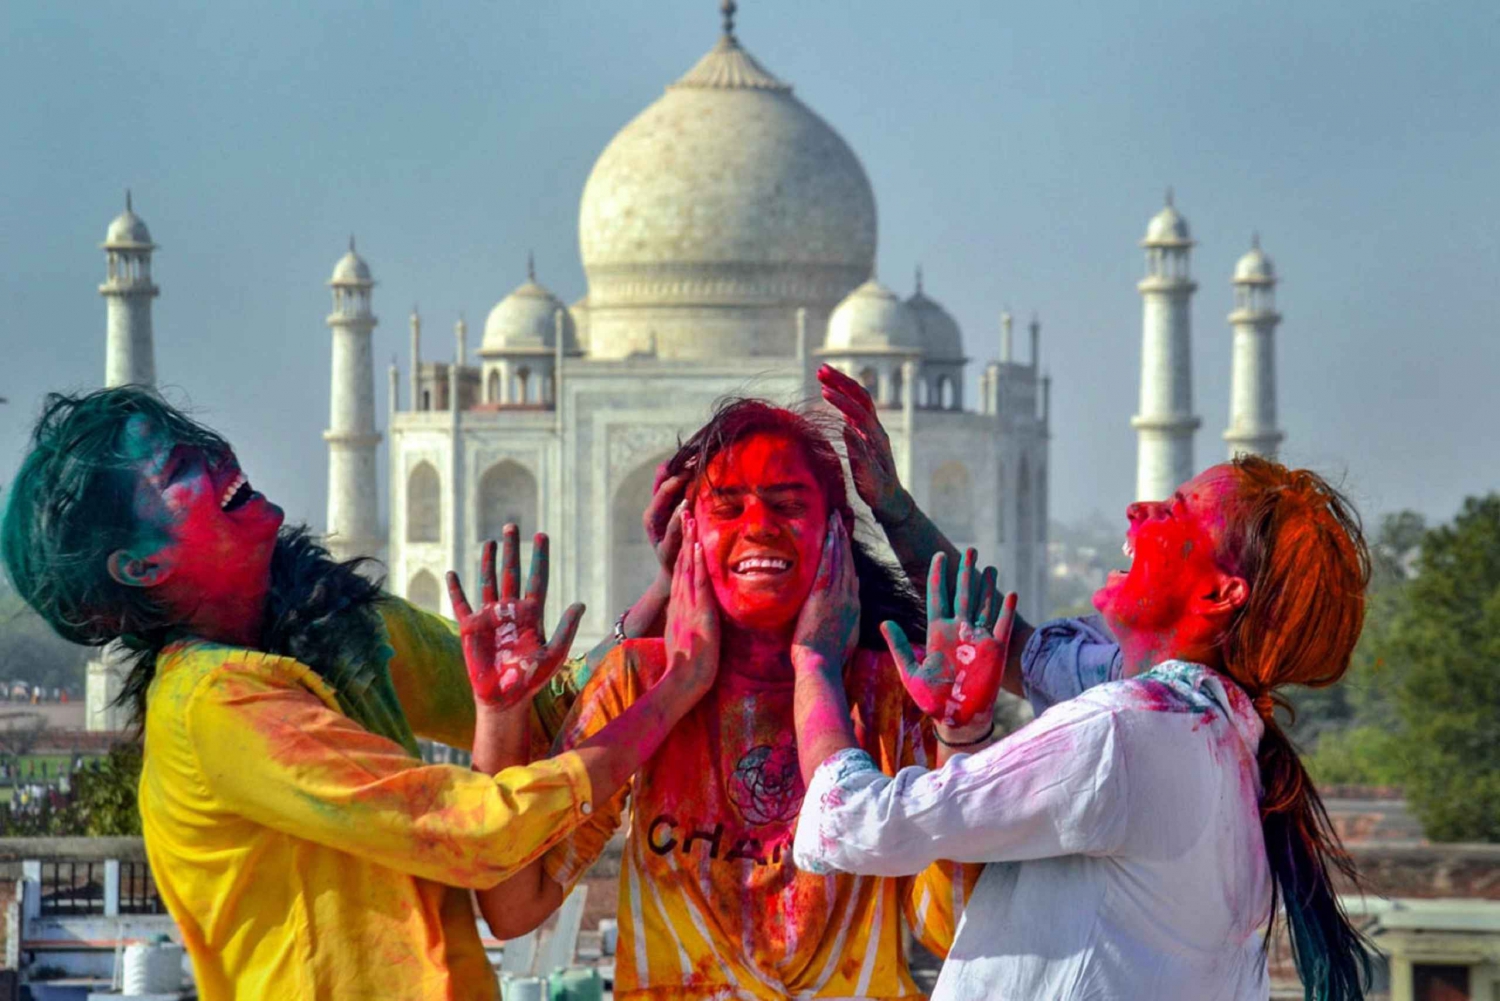 Njut av Holi-festivalen med färger, musik och dans